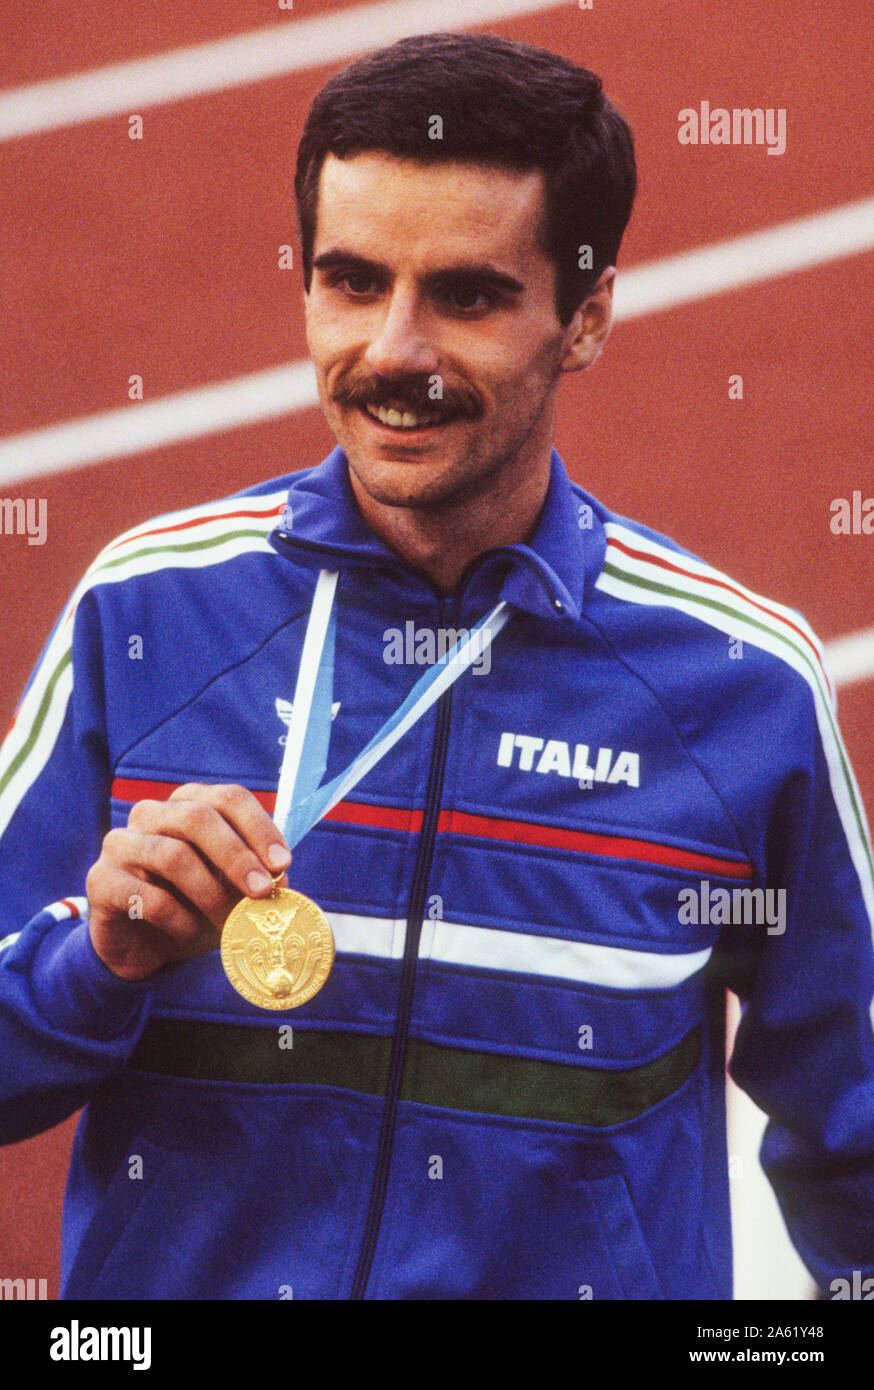 Alberto Cova pensionierte Italienische Langstreckenläuferin Gewinner der 10.000 m bei den Olympischen Sommerspielen in Los Angeles 1984 und Weltmeister in Helsinki 1983 Stockfoto